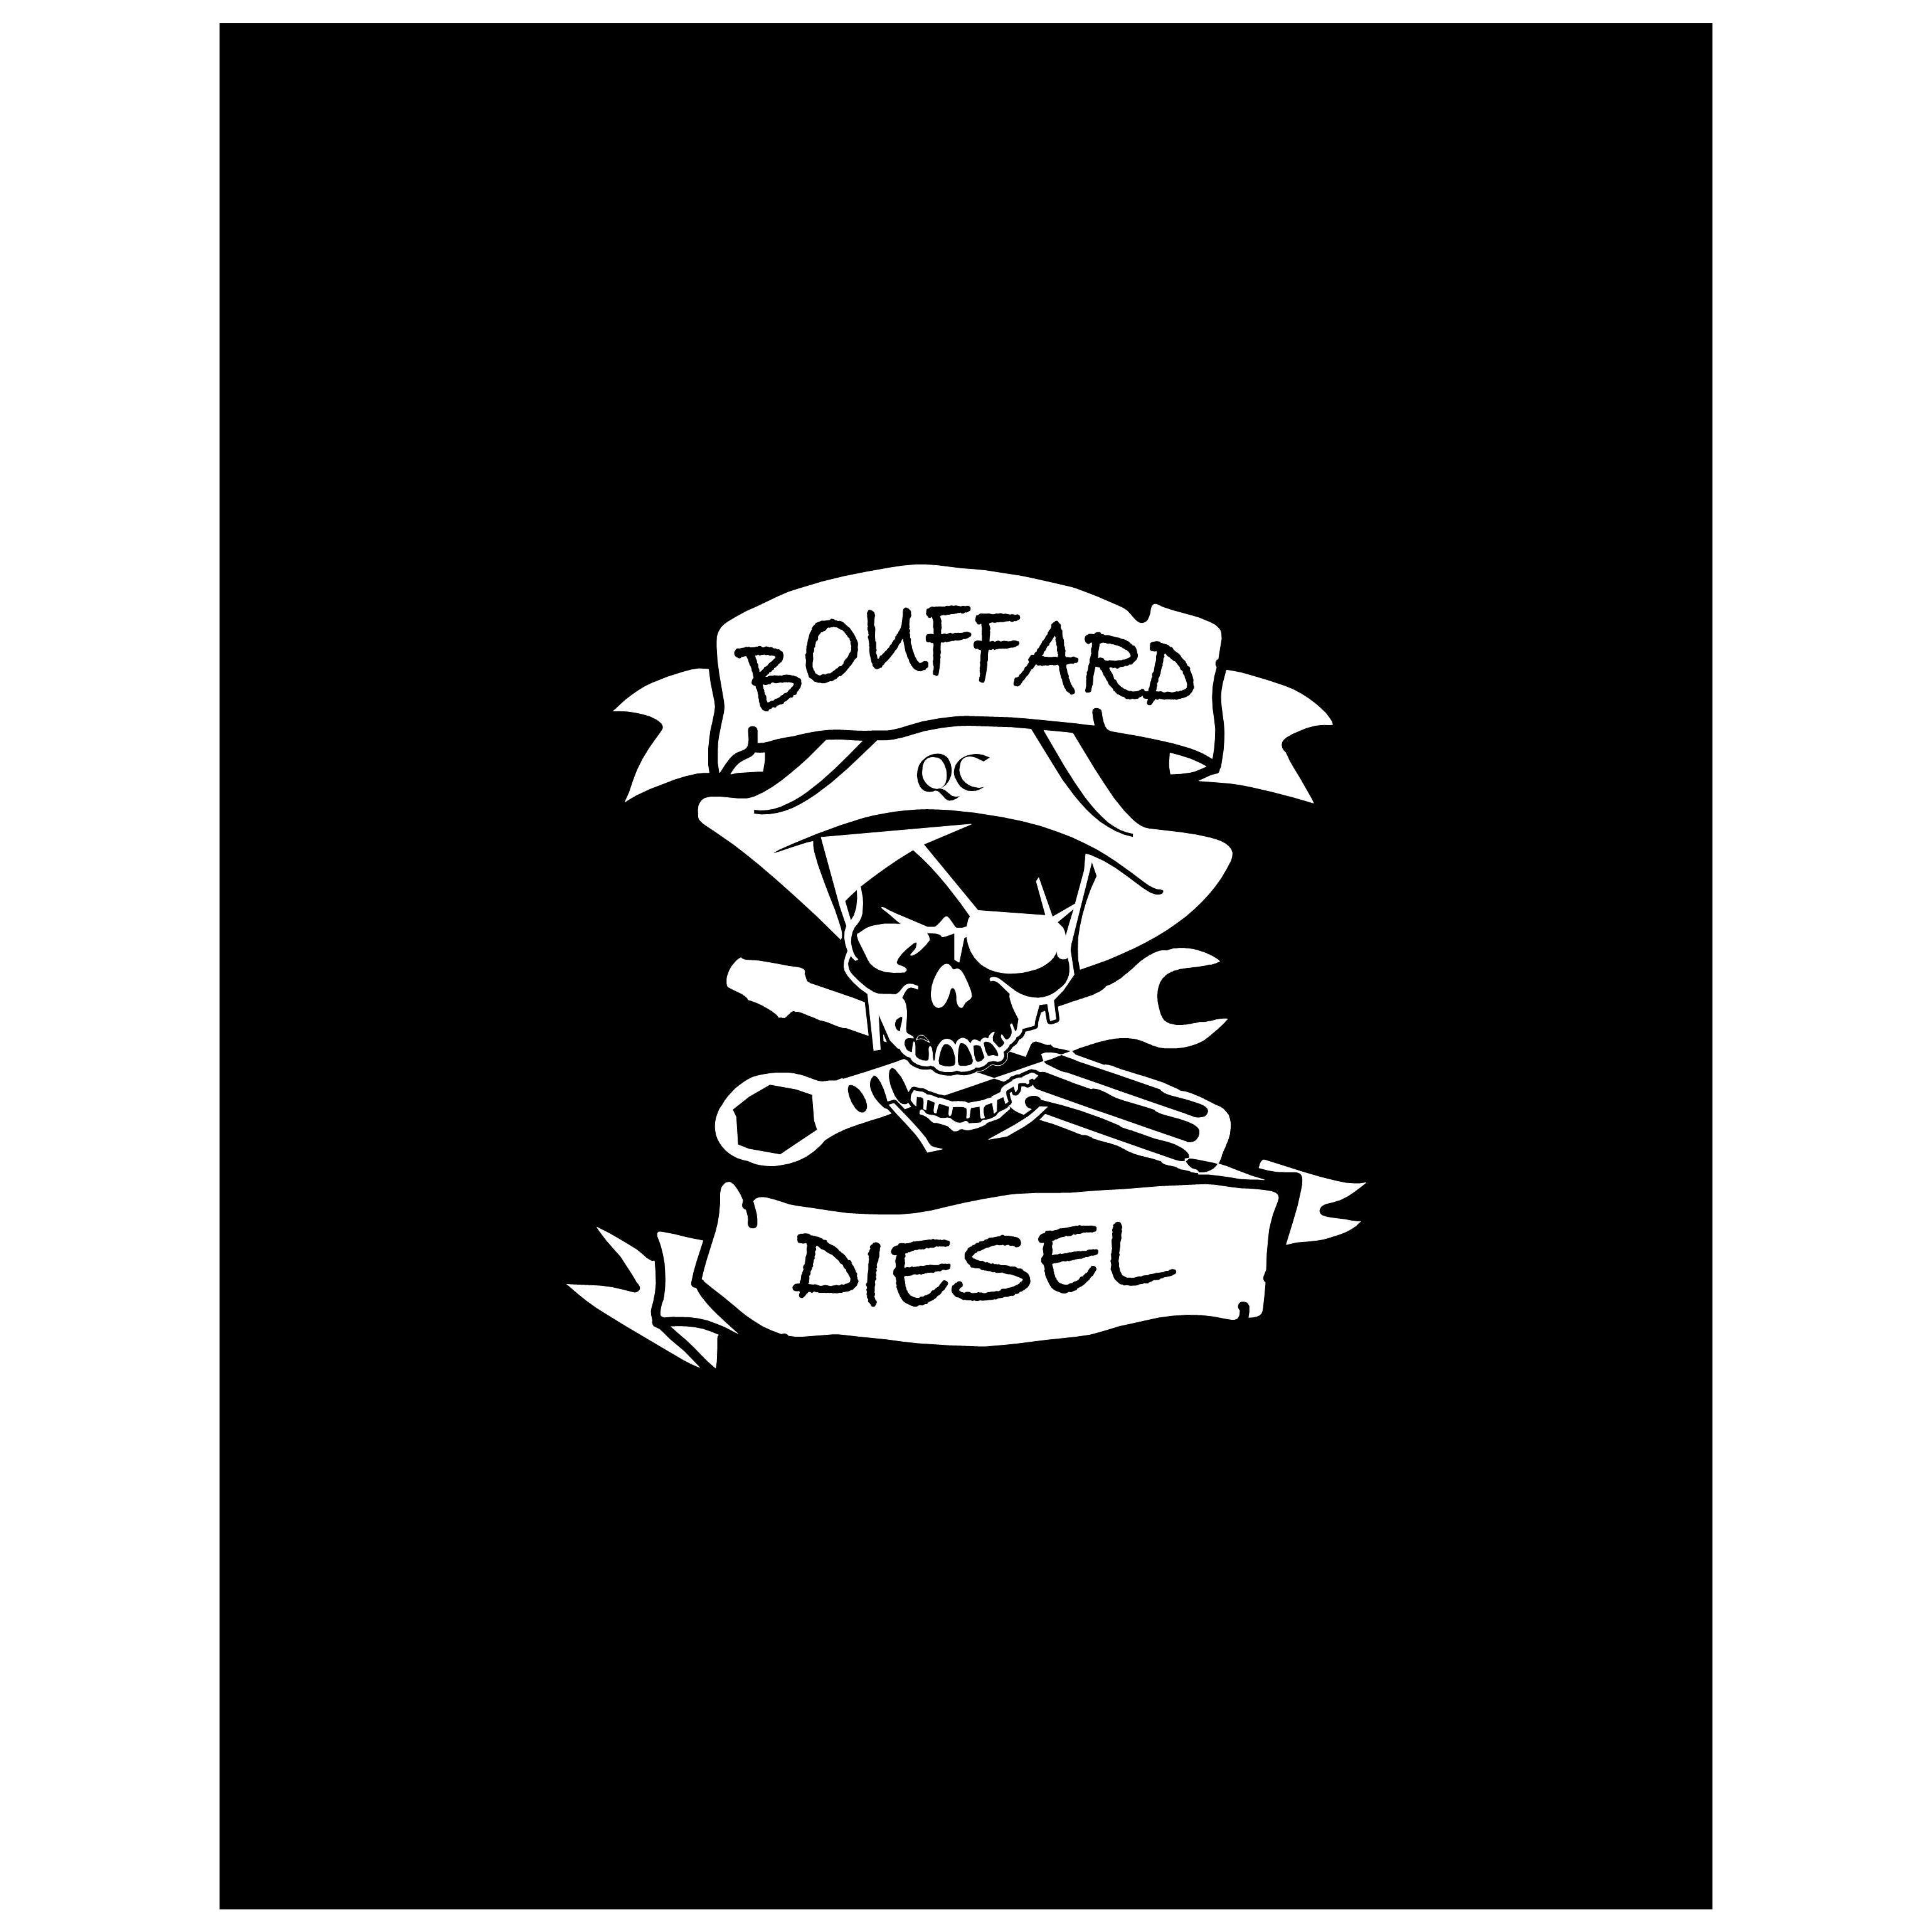 Bouffard Diesel